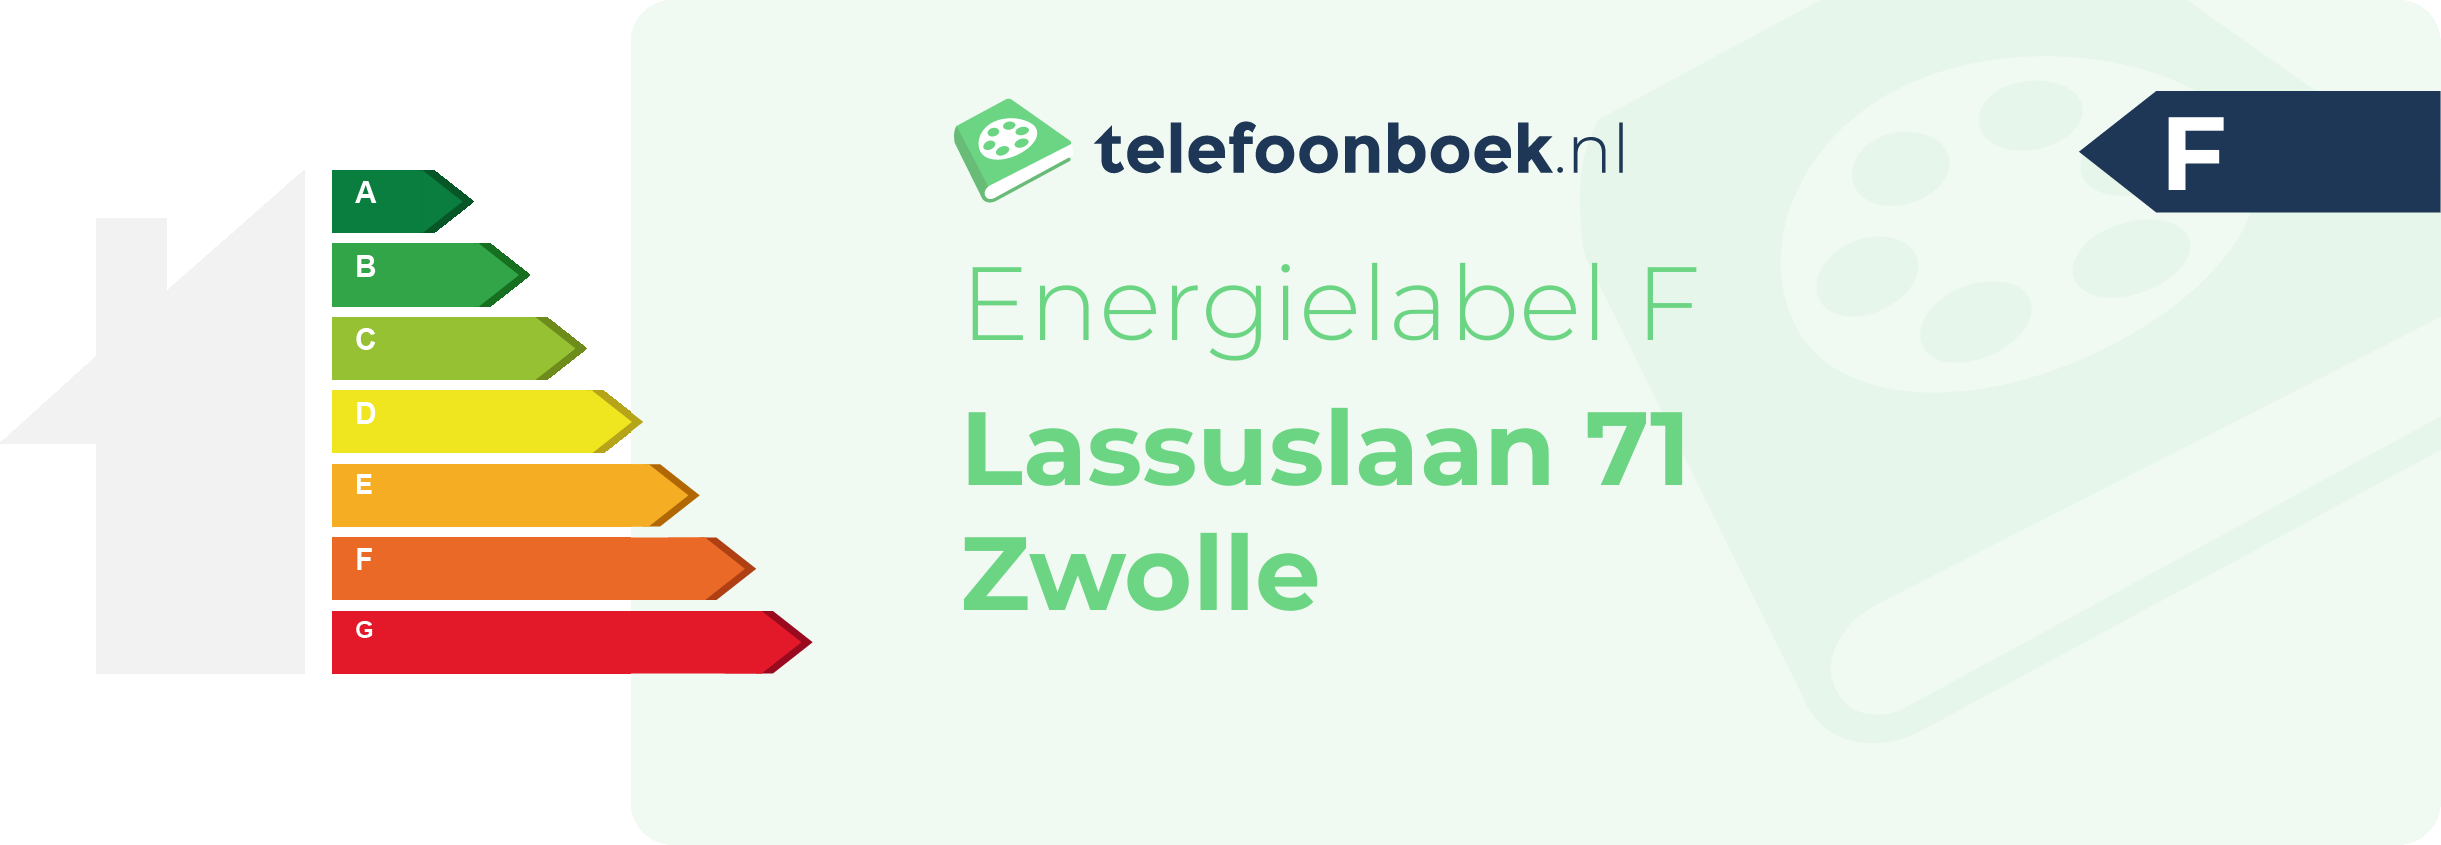 Energielabel Lassuslaan 71 Zwolle